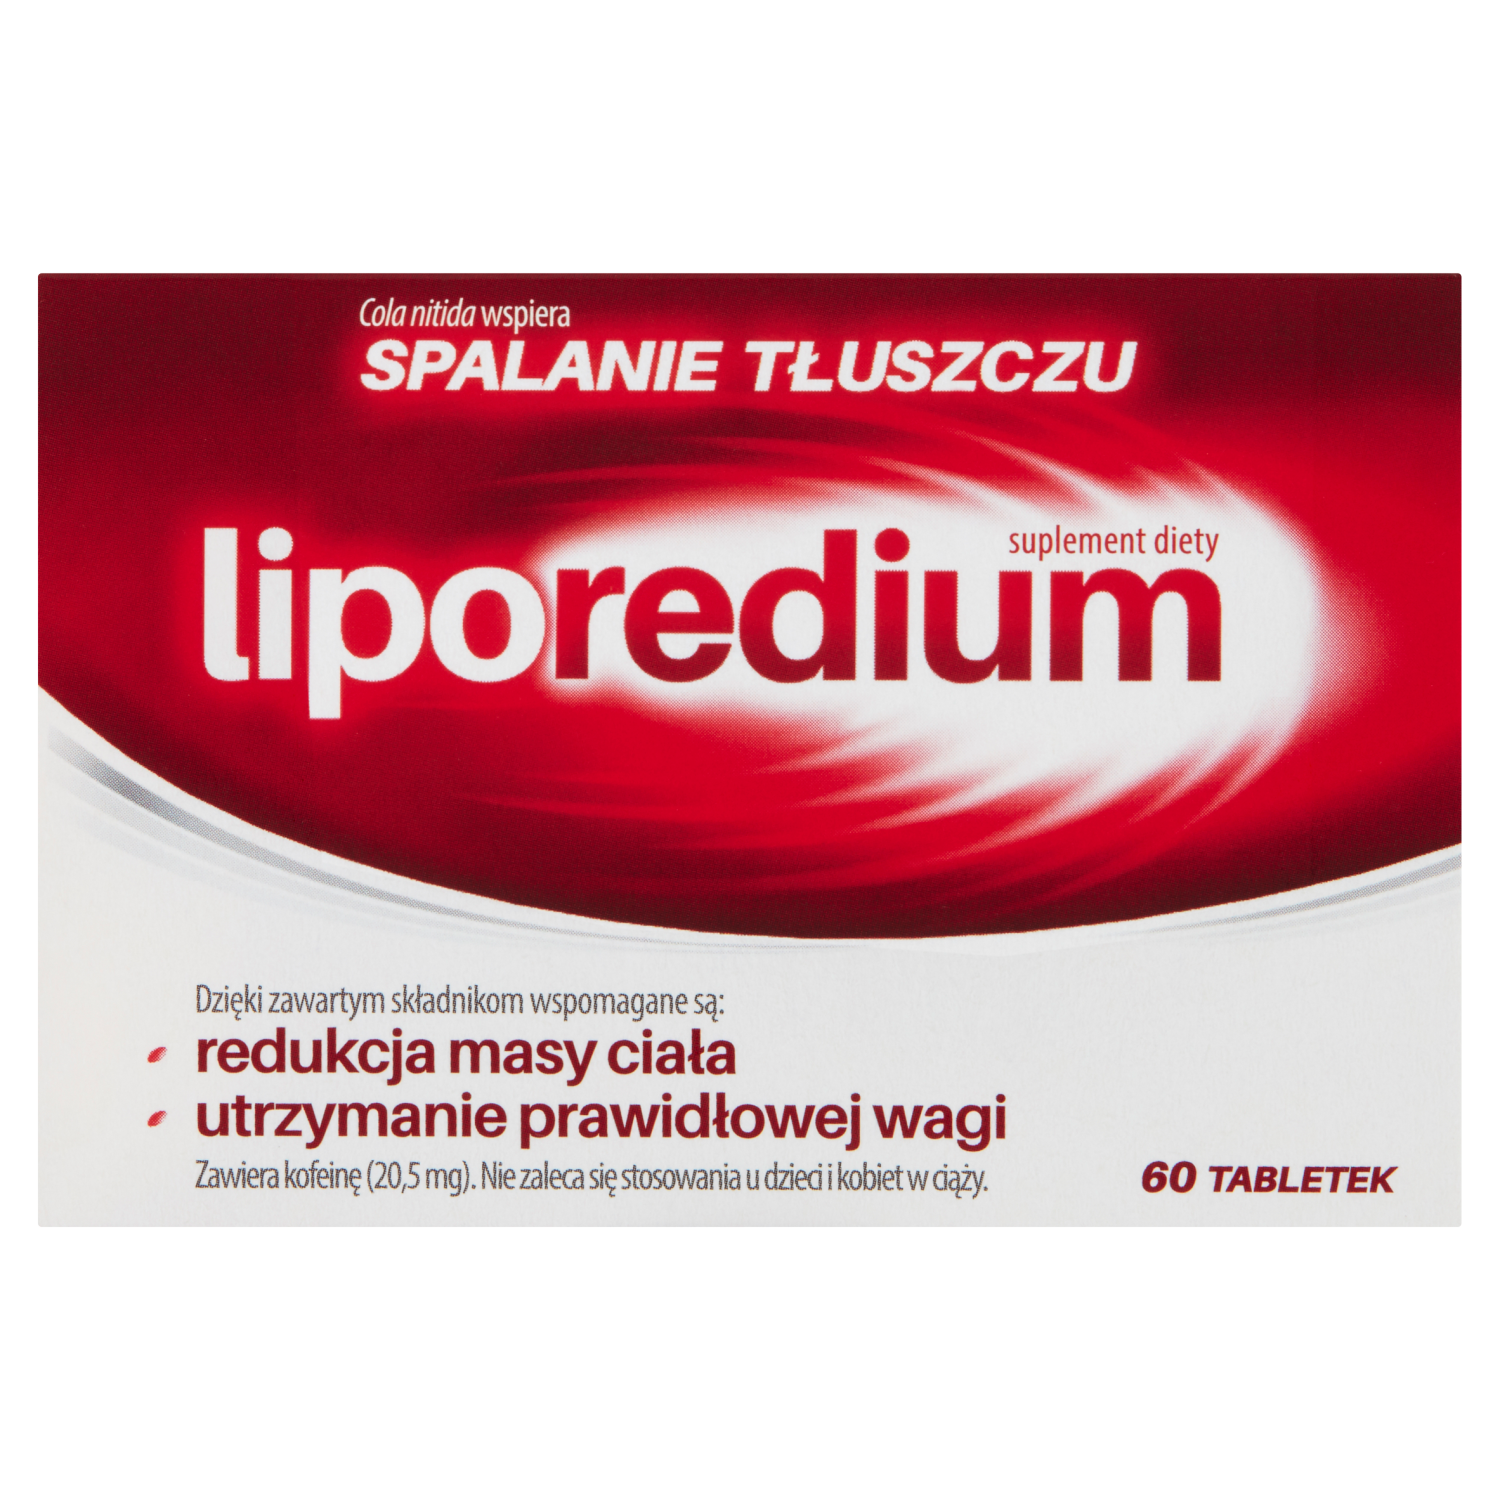 liporedium биологически активная добавка 60 таблеток 1 упаковка Liporedium биологически активная добавка, 60 таблеток/1 упаковка